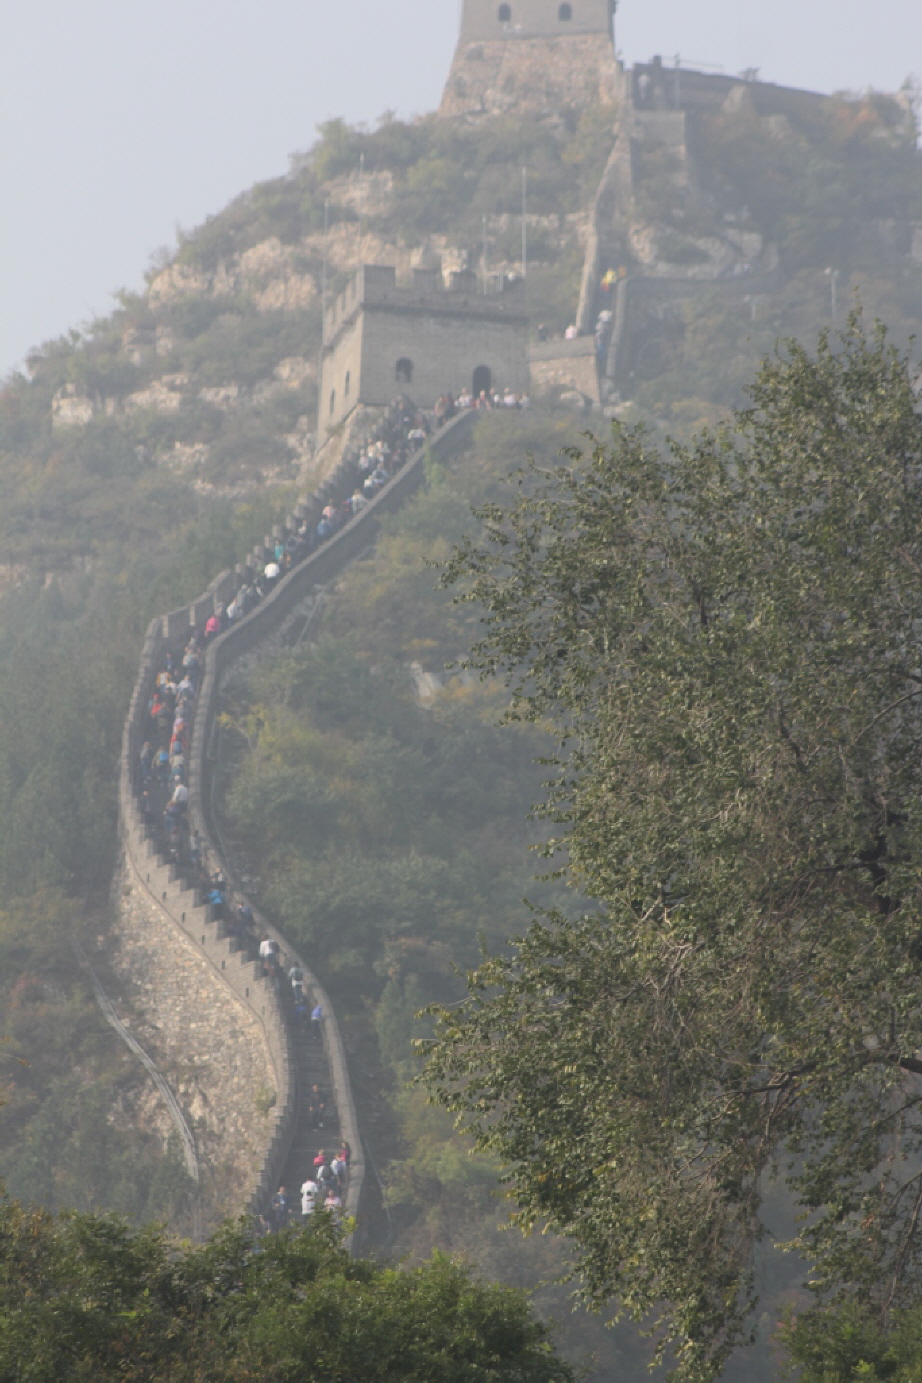 Die Große Mauer:  Die Mauer wird heute durch staatliche Finanzierung ständig restauriert. Bei Peking steht ein 600 km langer Abschnitt, der größtenteils in einem guten Zustand ist. Vier Abschnitte können von Touristen besichtigt werden. Der bekannteste re